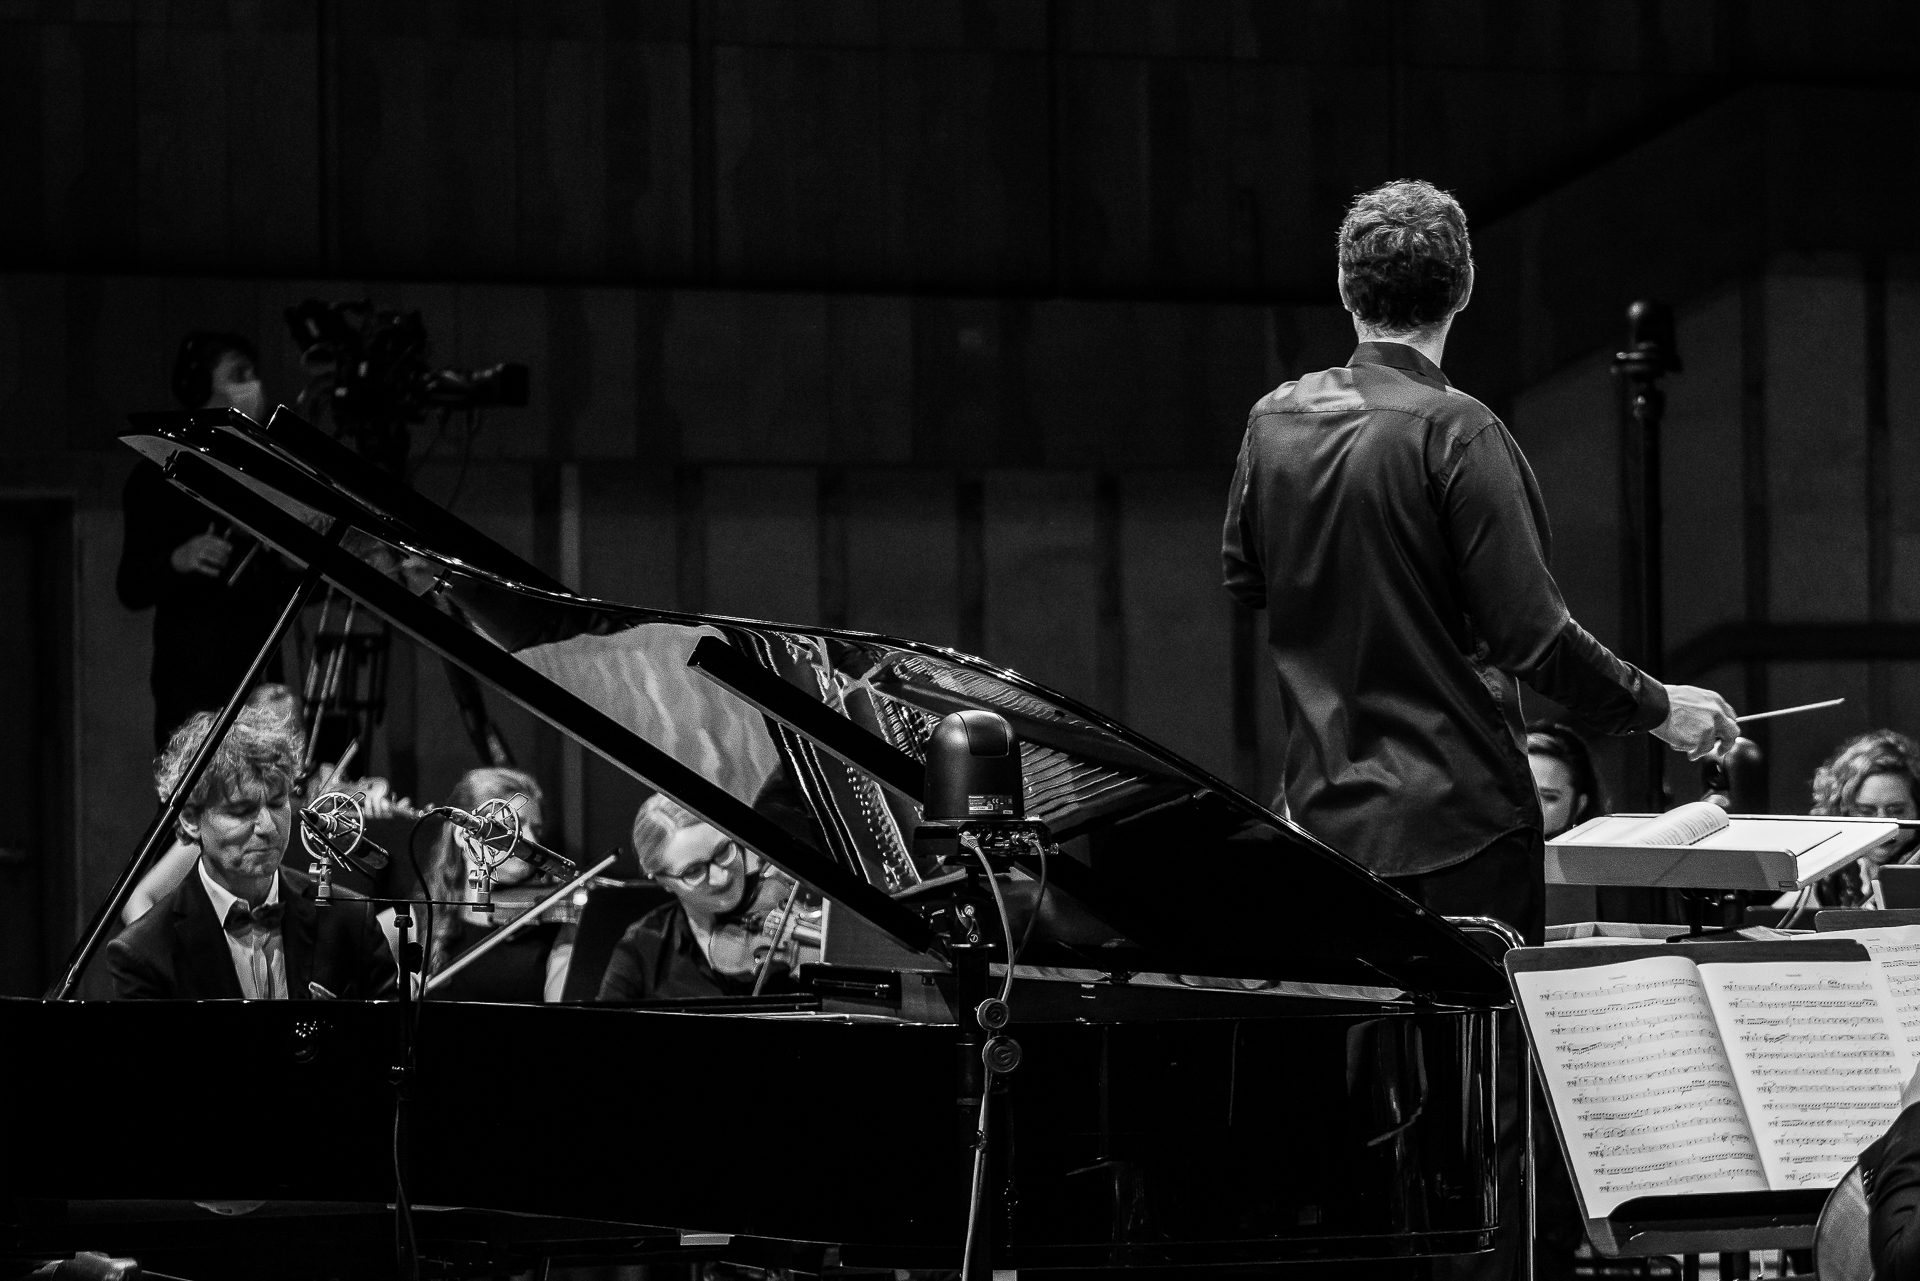 zdjecie solisty Pawla Kowalskiego przy fortepianie podczas koncertu 5 wrzesnia 2020